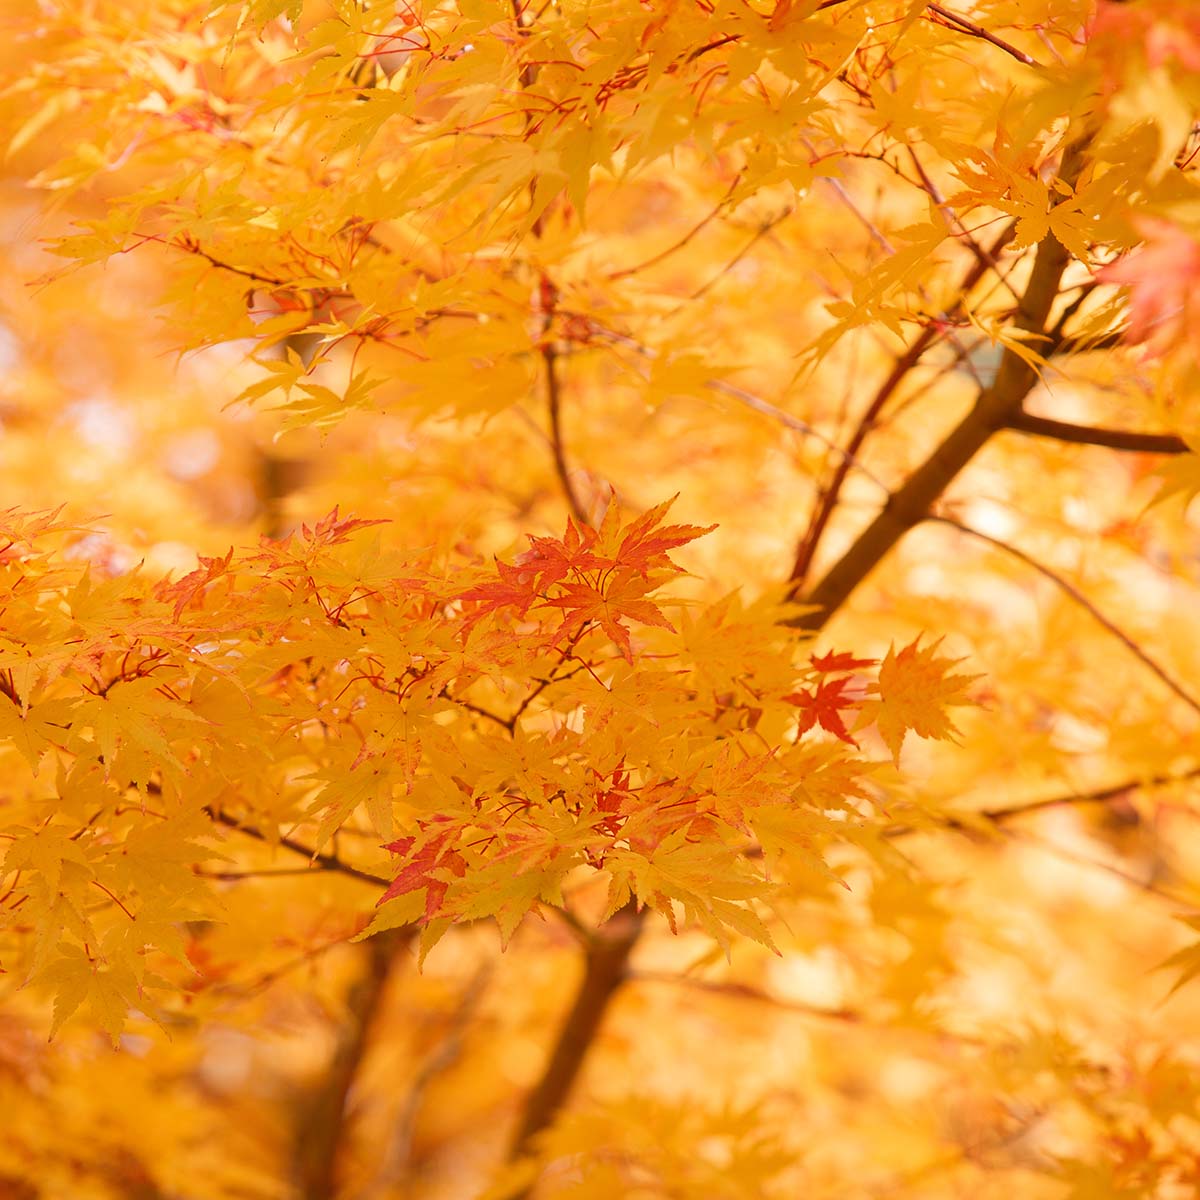 Japanese maple leaves turning gold and orange